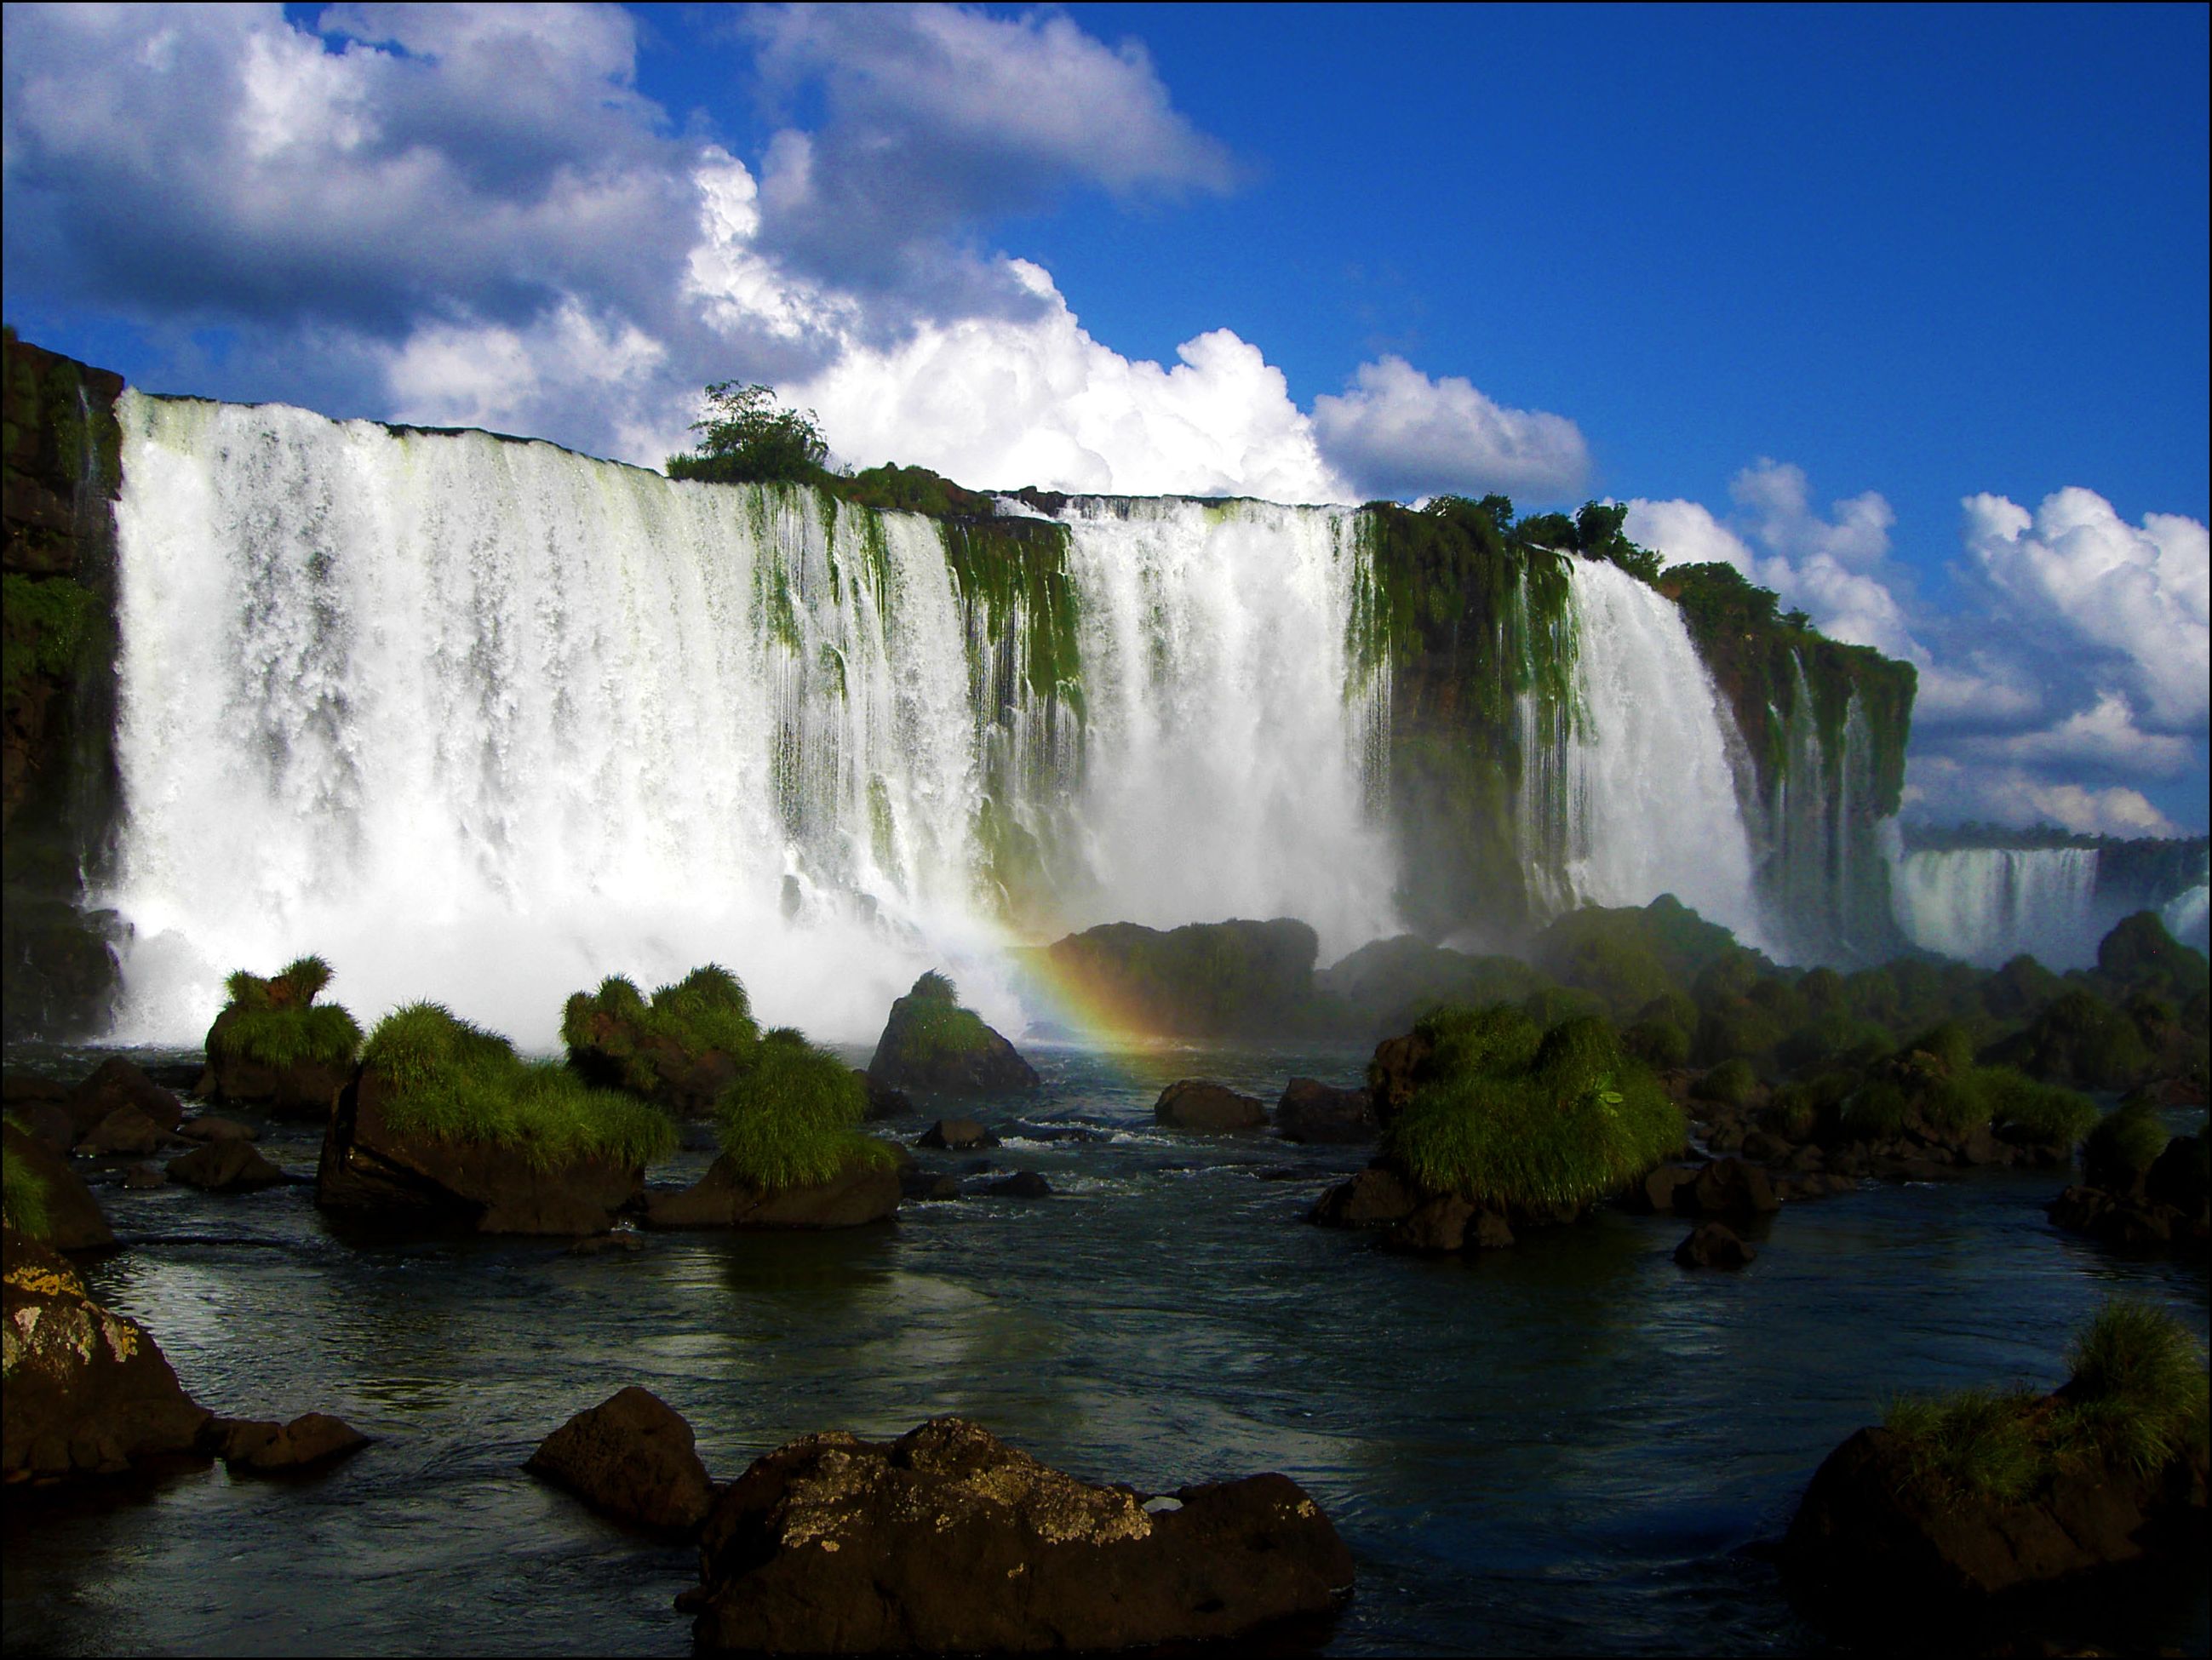 Буэнос айрес внутренние воды. Национальный парк Юбуцы в Парагвае. Парагвай Игуасу. Водопад Игуасу в Южной Америке. Река Игуасу Бразилия.